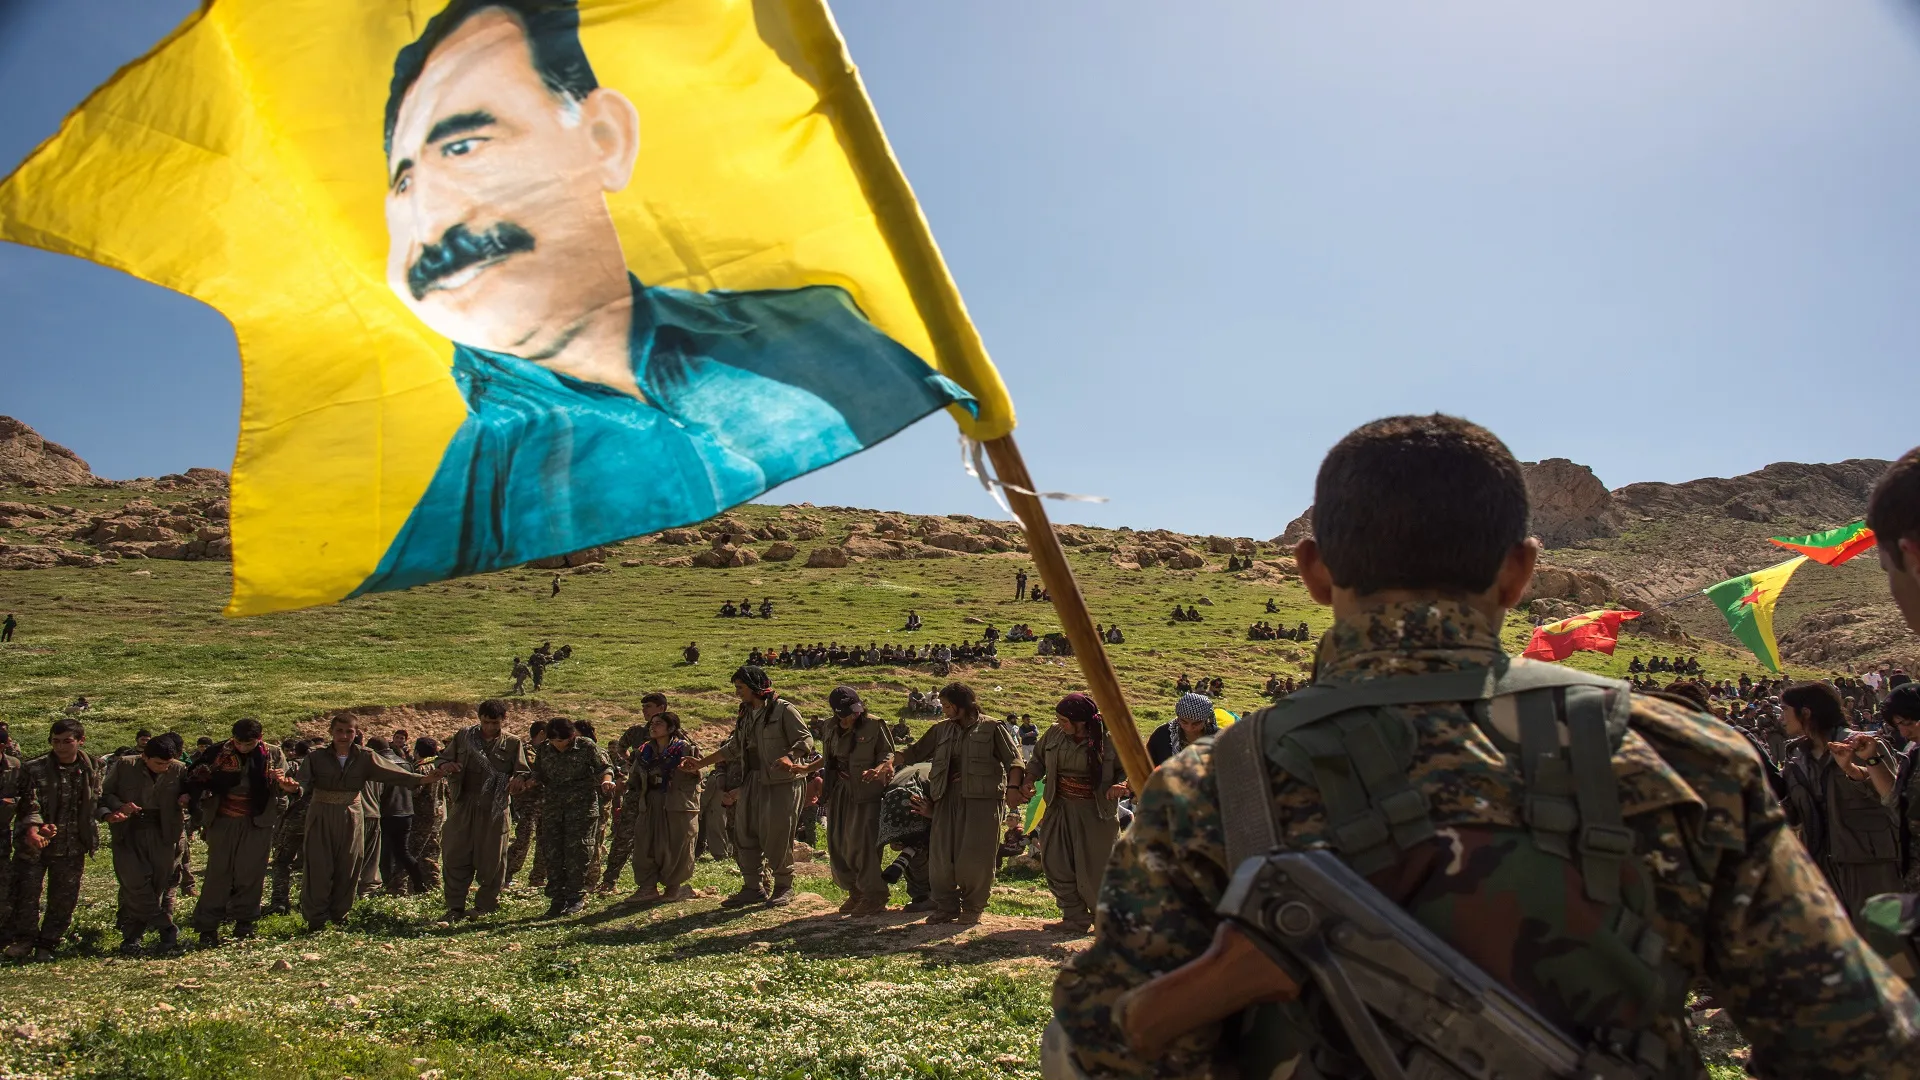 ناشط كردي: سلاح "ب ك ك" يستخدم ضد الشعب الكردي في كافة أجزاء "كردستان"